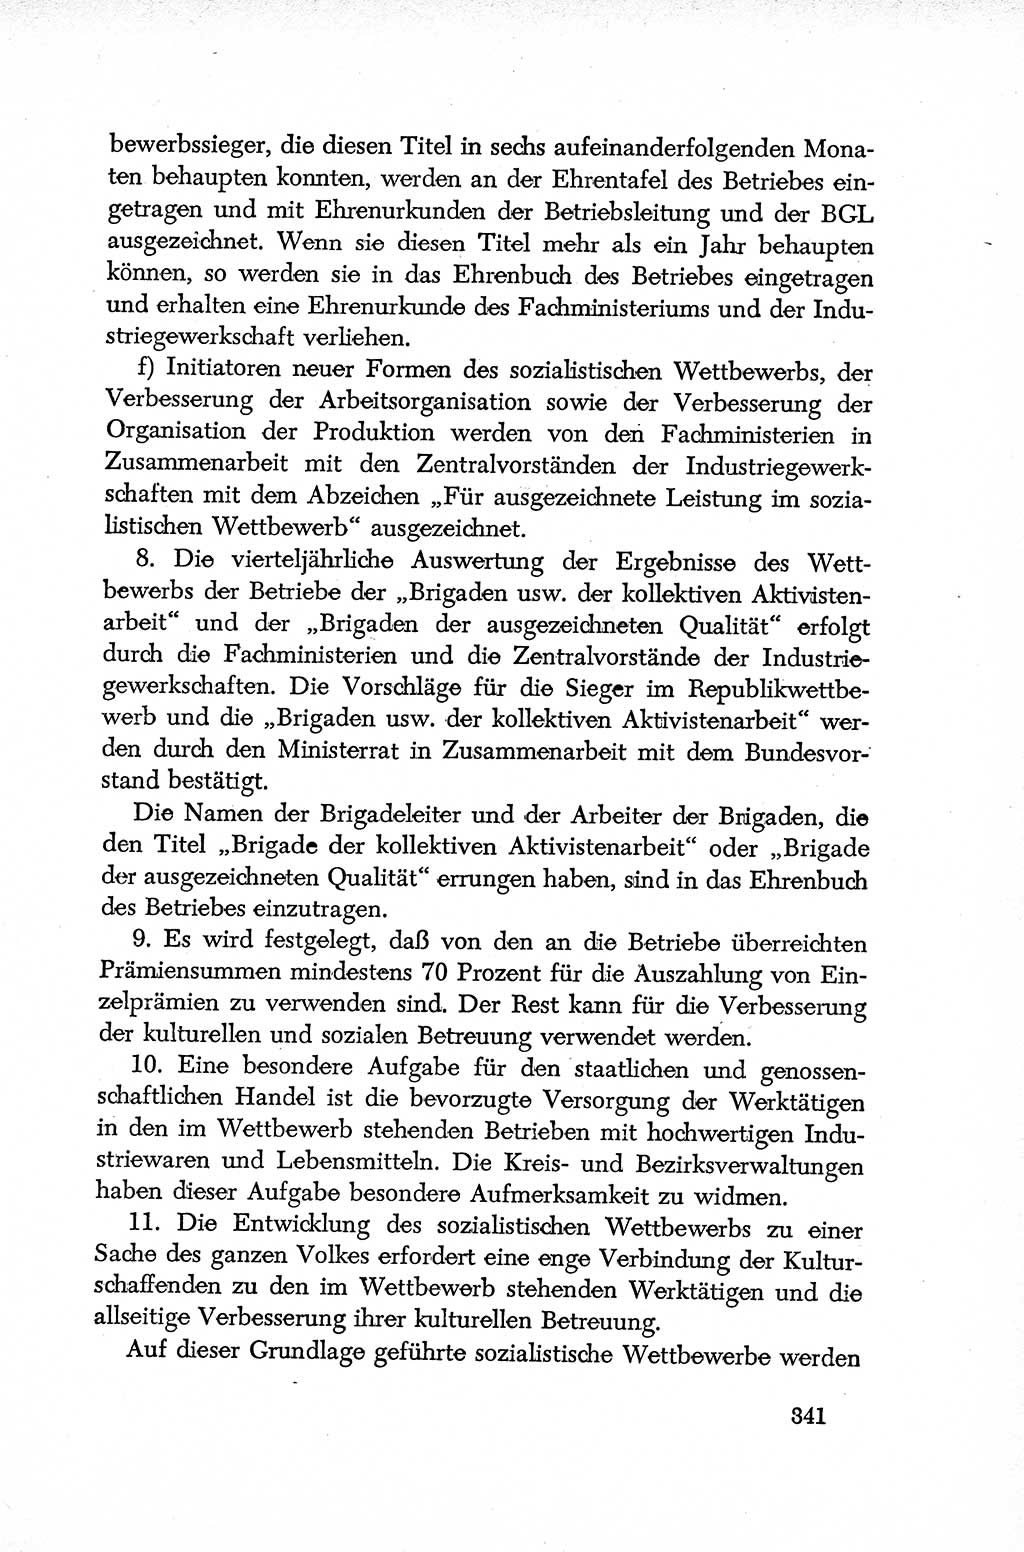 Dokumente der Sozialistischen Einheitspartei Deutschlands (SED) [Deutsche Demokratische Republik (DDR)] 1952-1953, Seite 341 (Dok. SED DDR 1952-1953, S. 341)